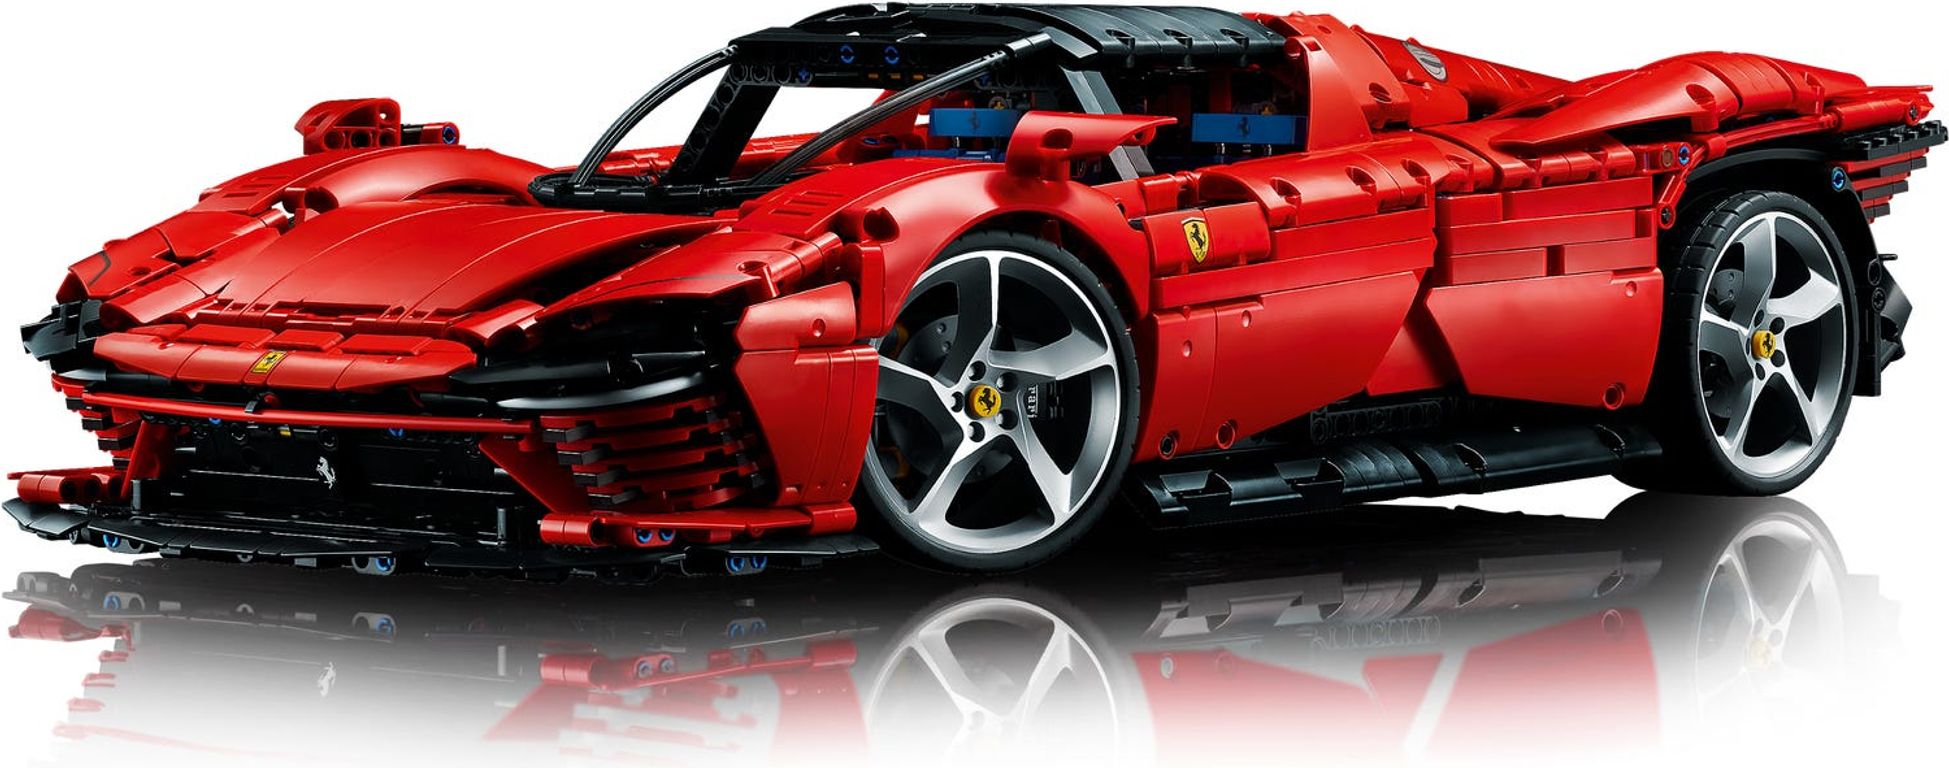 LEGO® Technic Ferrari Daytona SP3 komponenten